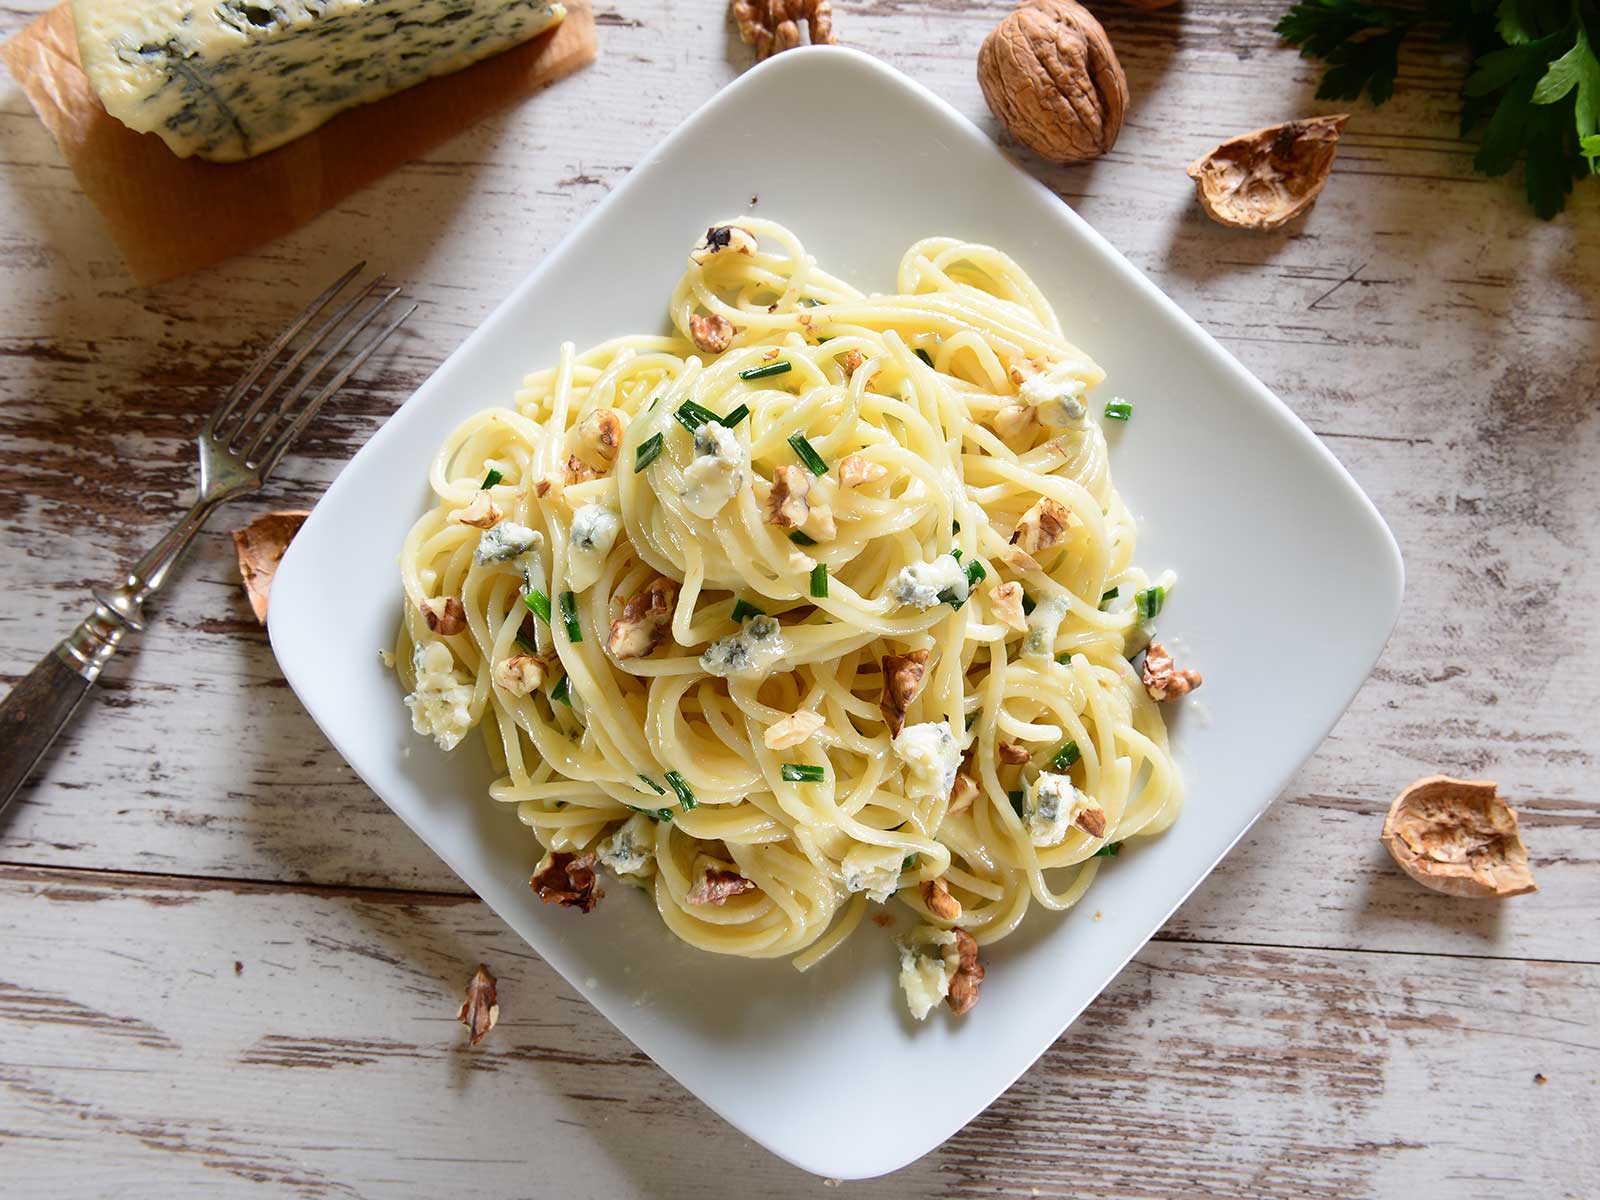 Rezept von Tress: Spaghetti mit Gorgonzola und Walnusskernen angerichtet auf einem weißen Teller